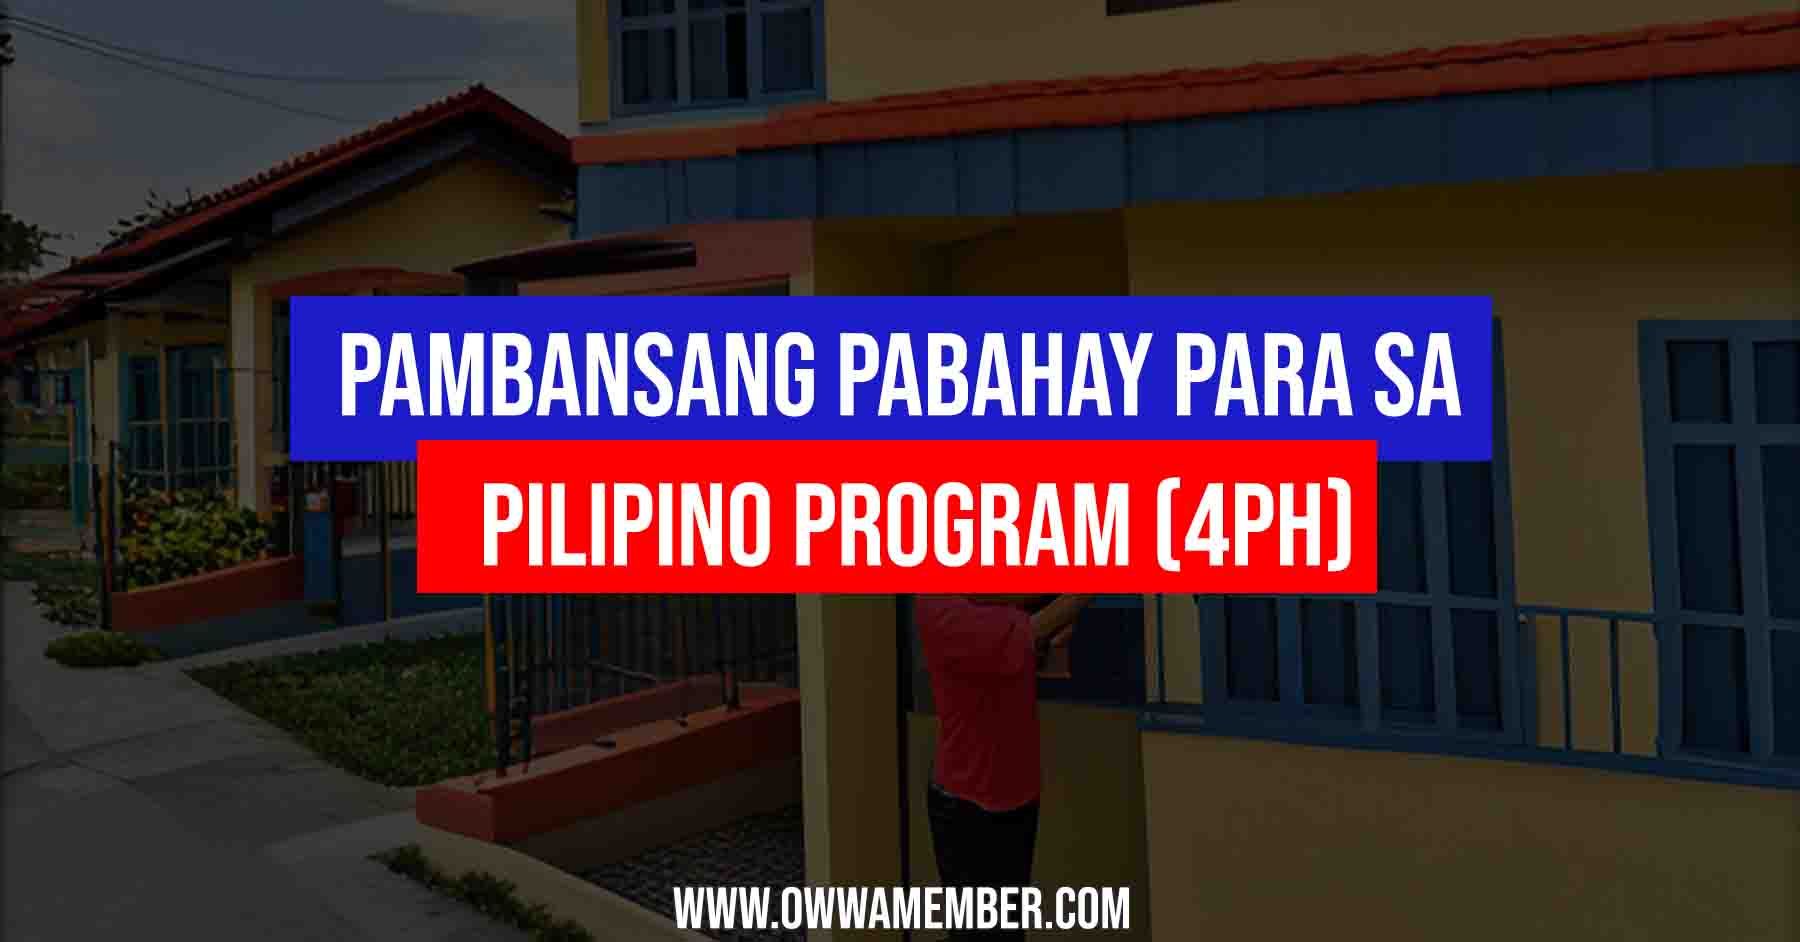 Pambansang Pabahay Para sa Pilipino Program 4PH